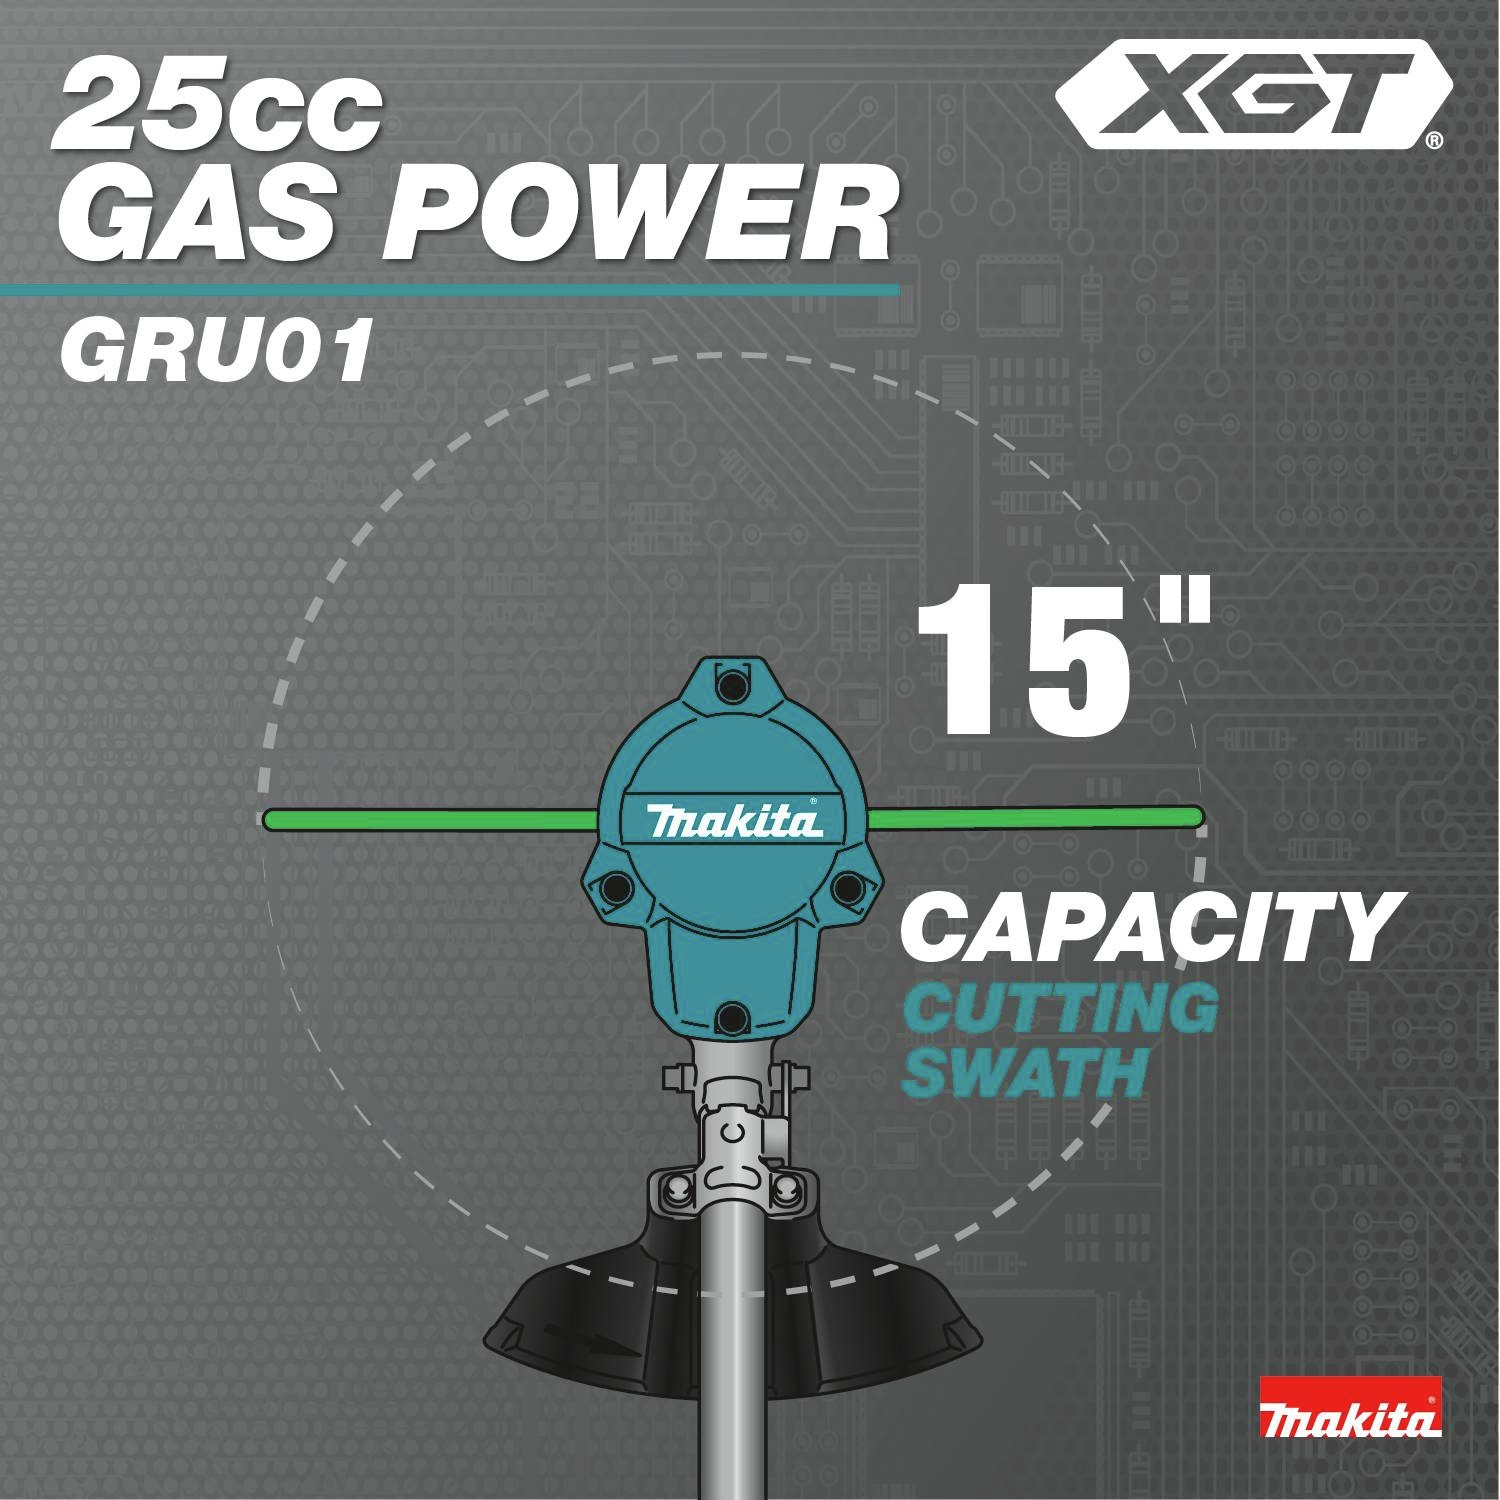 25cc Gas Power: 15 in. capacity cutting swath